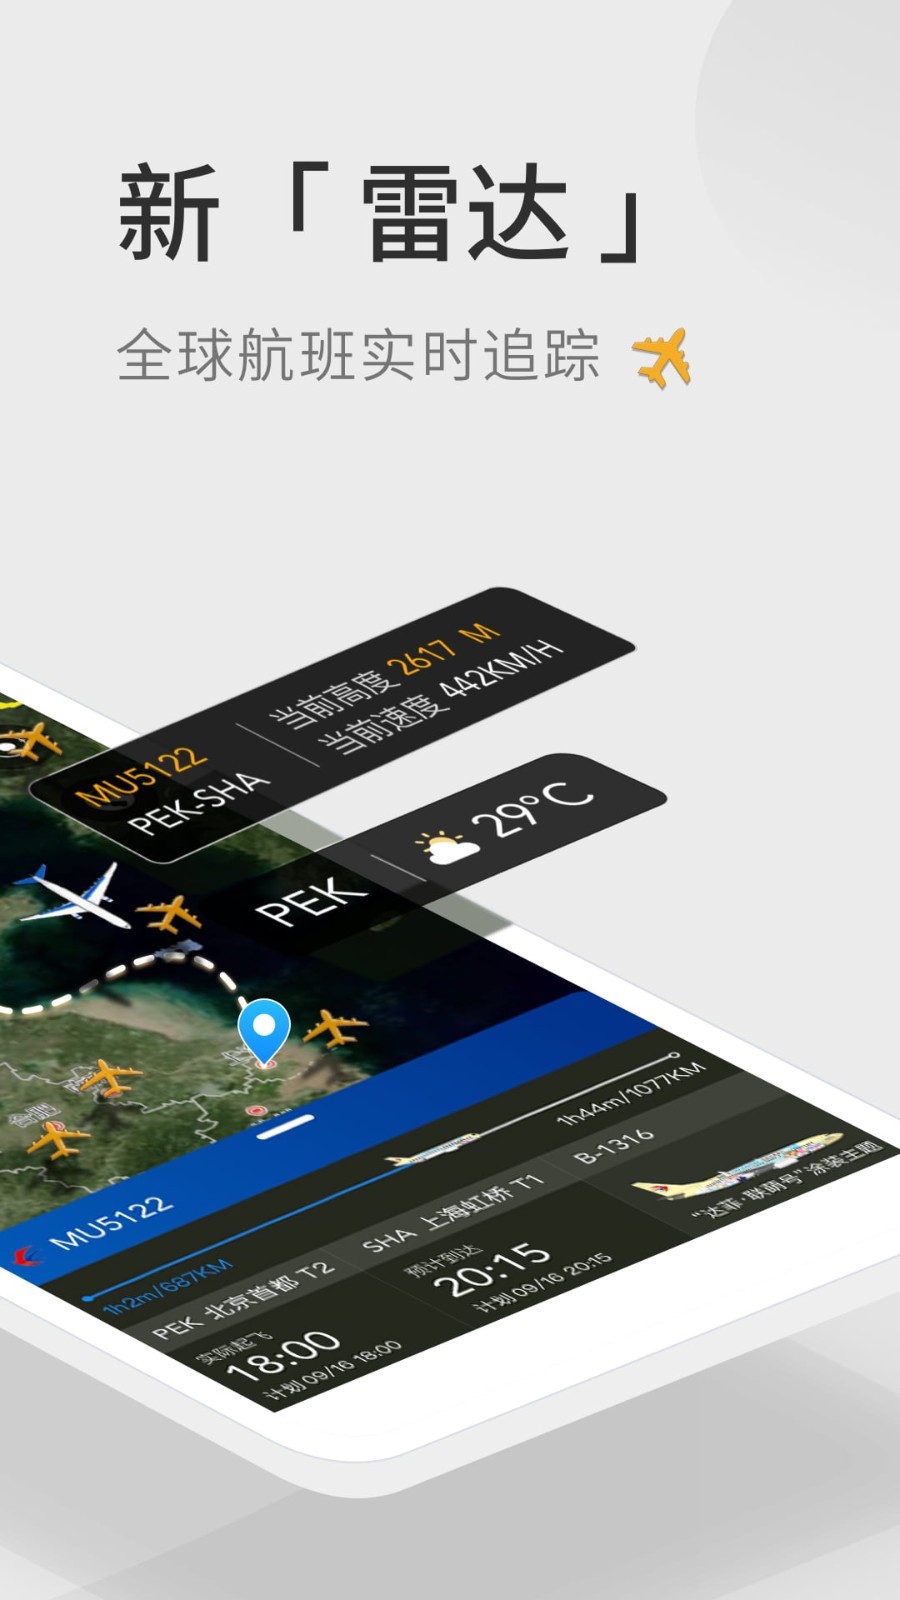 飞机app官方下载,纸飞机中文版下载官网